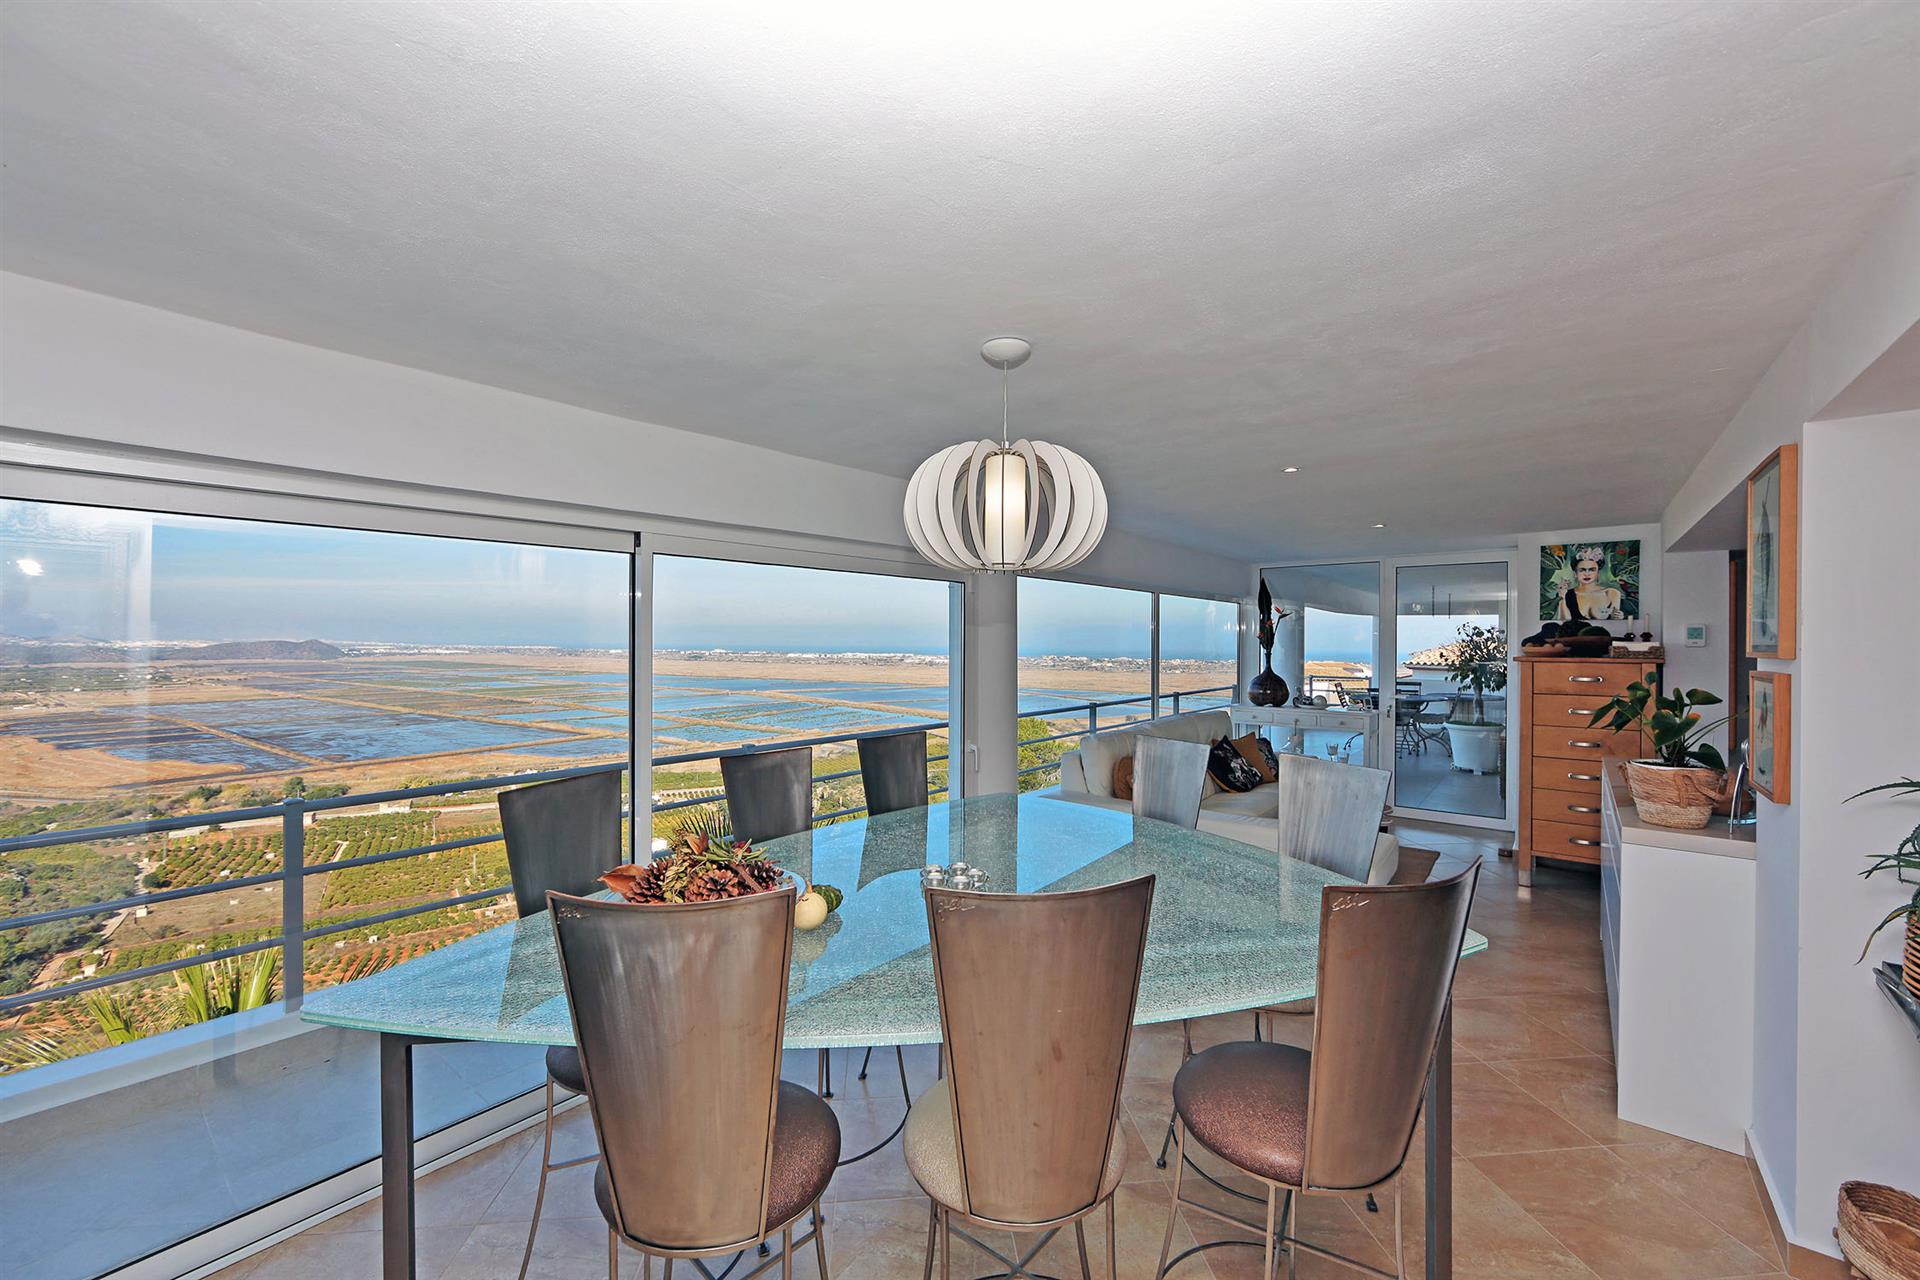 Uitzonderlijke luxe villa met panoramisch uitzicht op zee